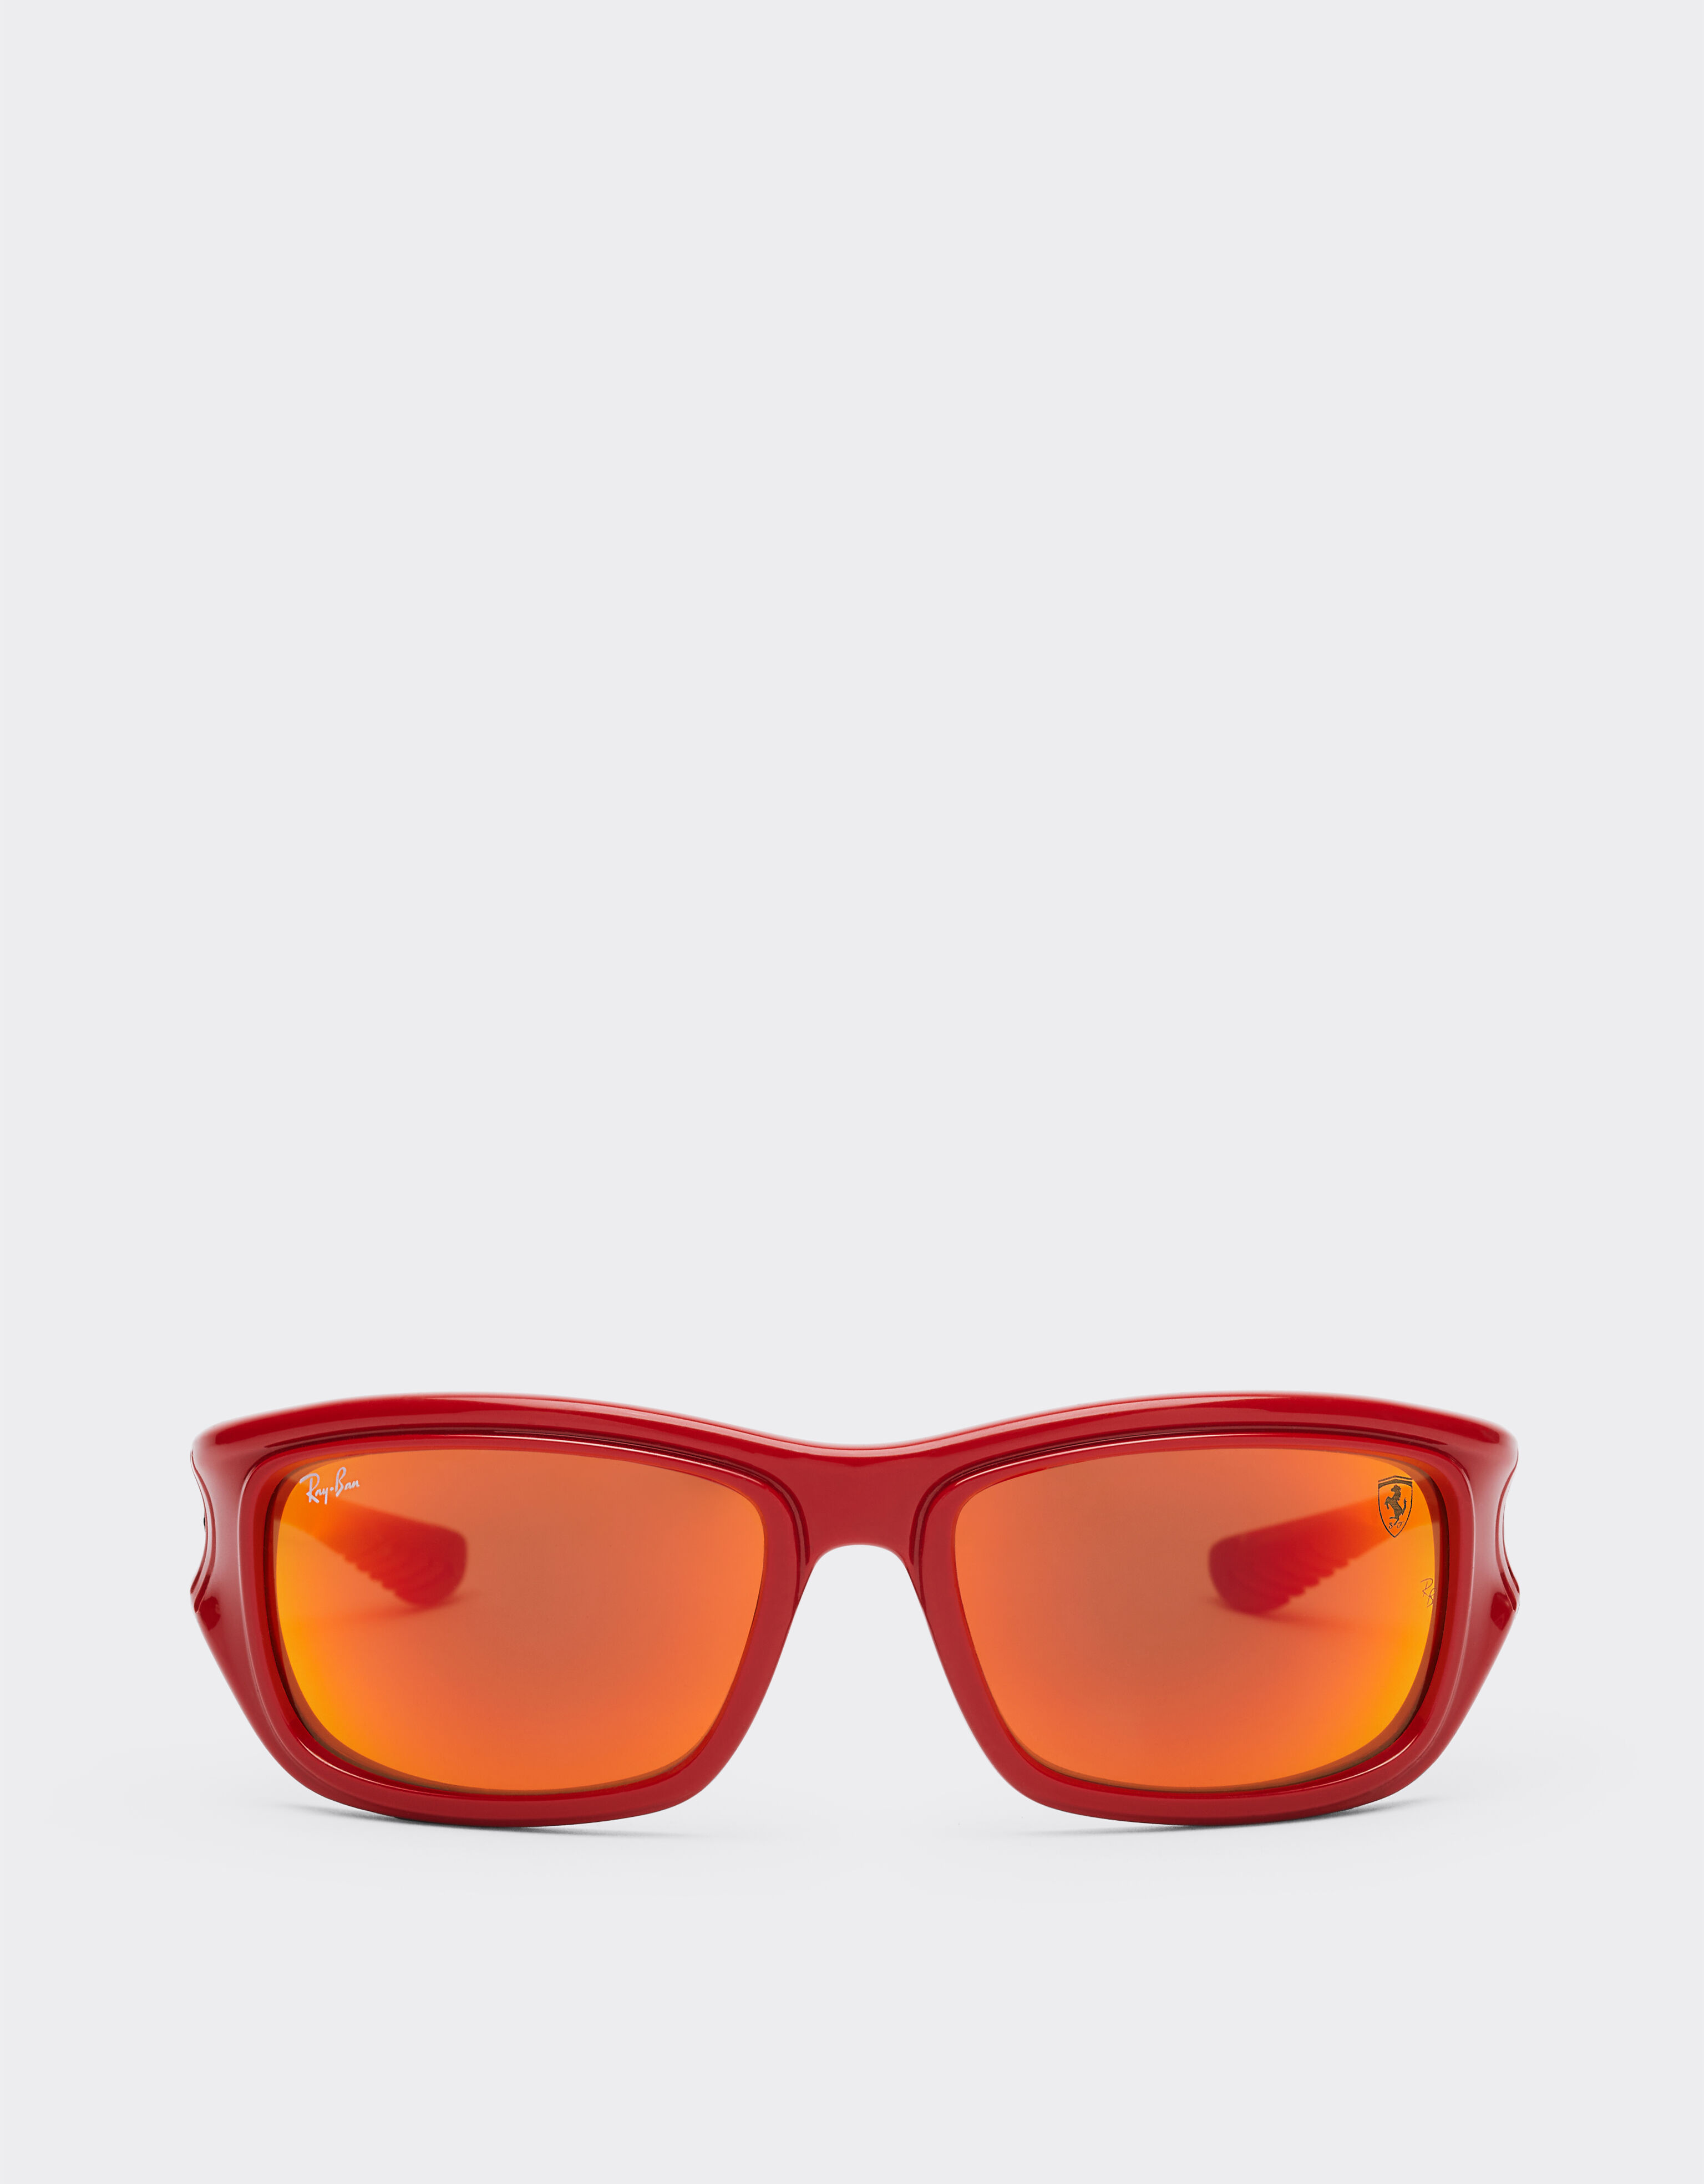 ${brand} Ray-Ban für Scuderia Ferrari RB4405M in Rot/Schwarz mit braunen Gläsern mit orangefarbener Verspiegelung ${colorDescription} ${masterID}